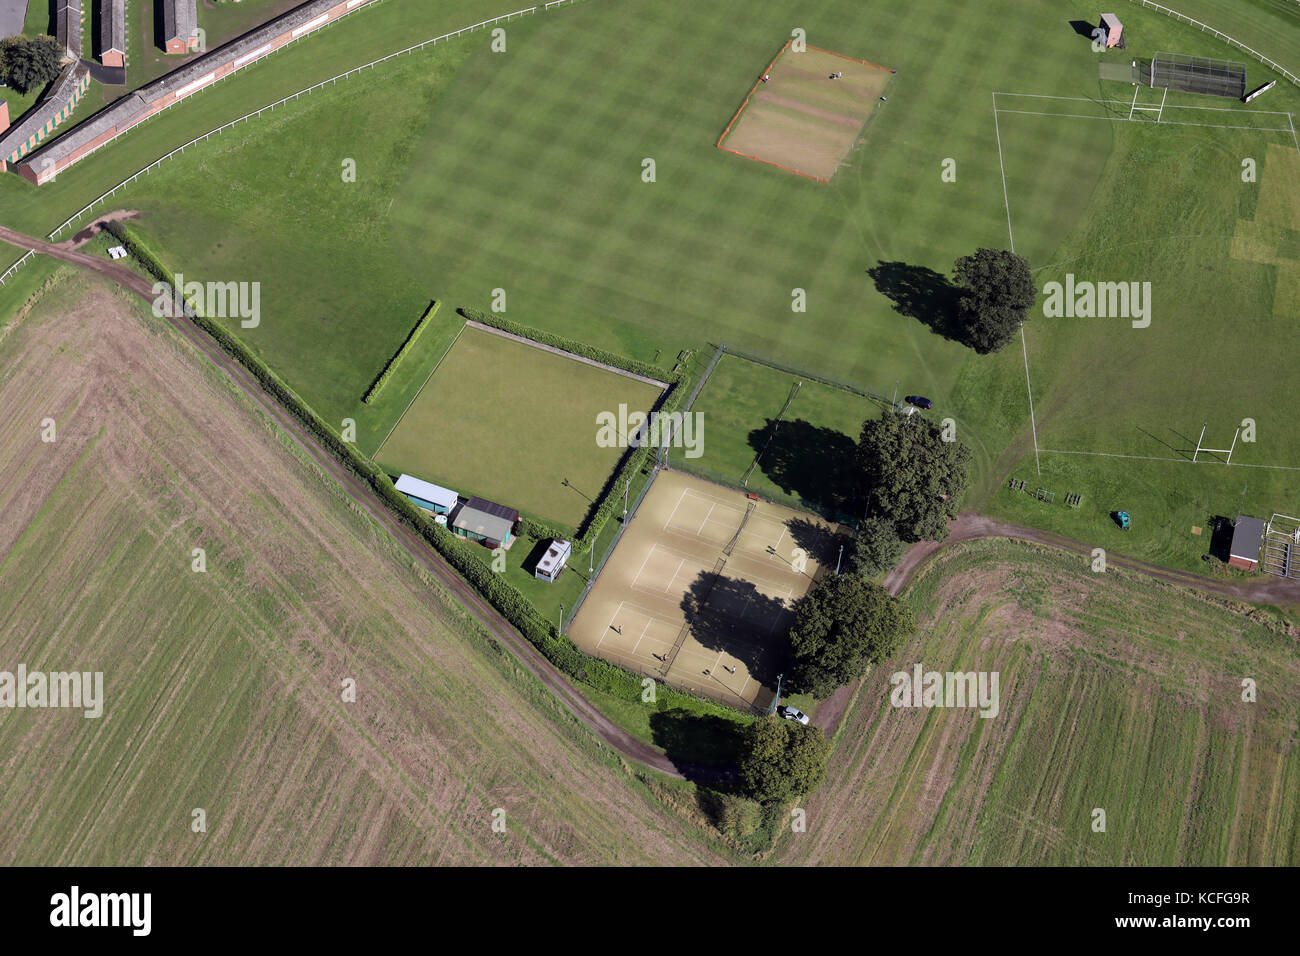 Vue aérienne de l'Thirsk Athletic Sports & Social Club. Terrain de boules, tennis et terrain de cricket à l'Hippodrome de Thirsk, North Yorkshire, UK Banque D'Images